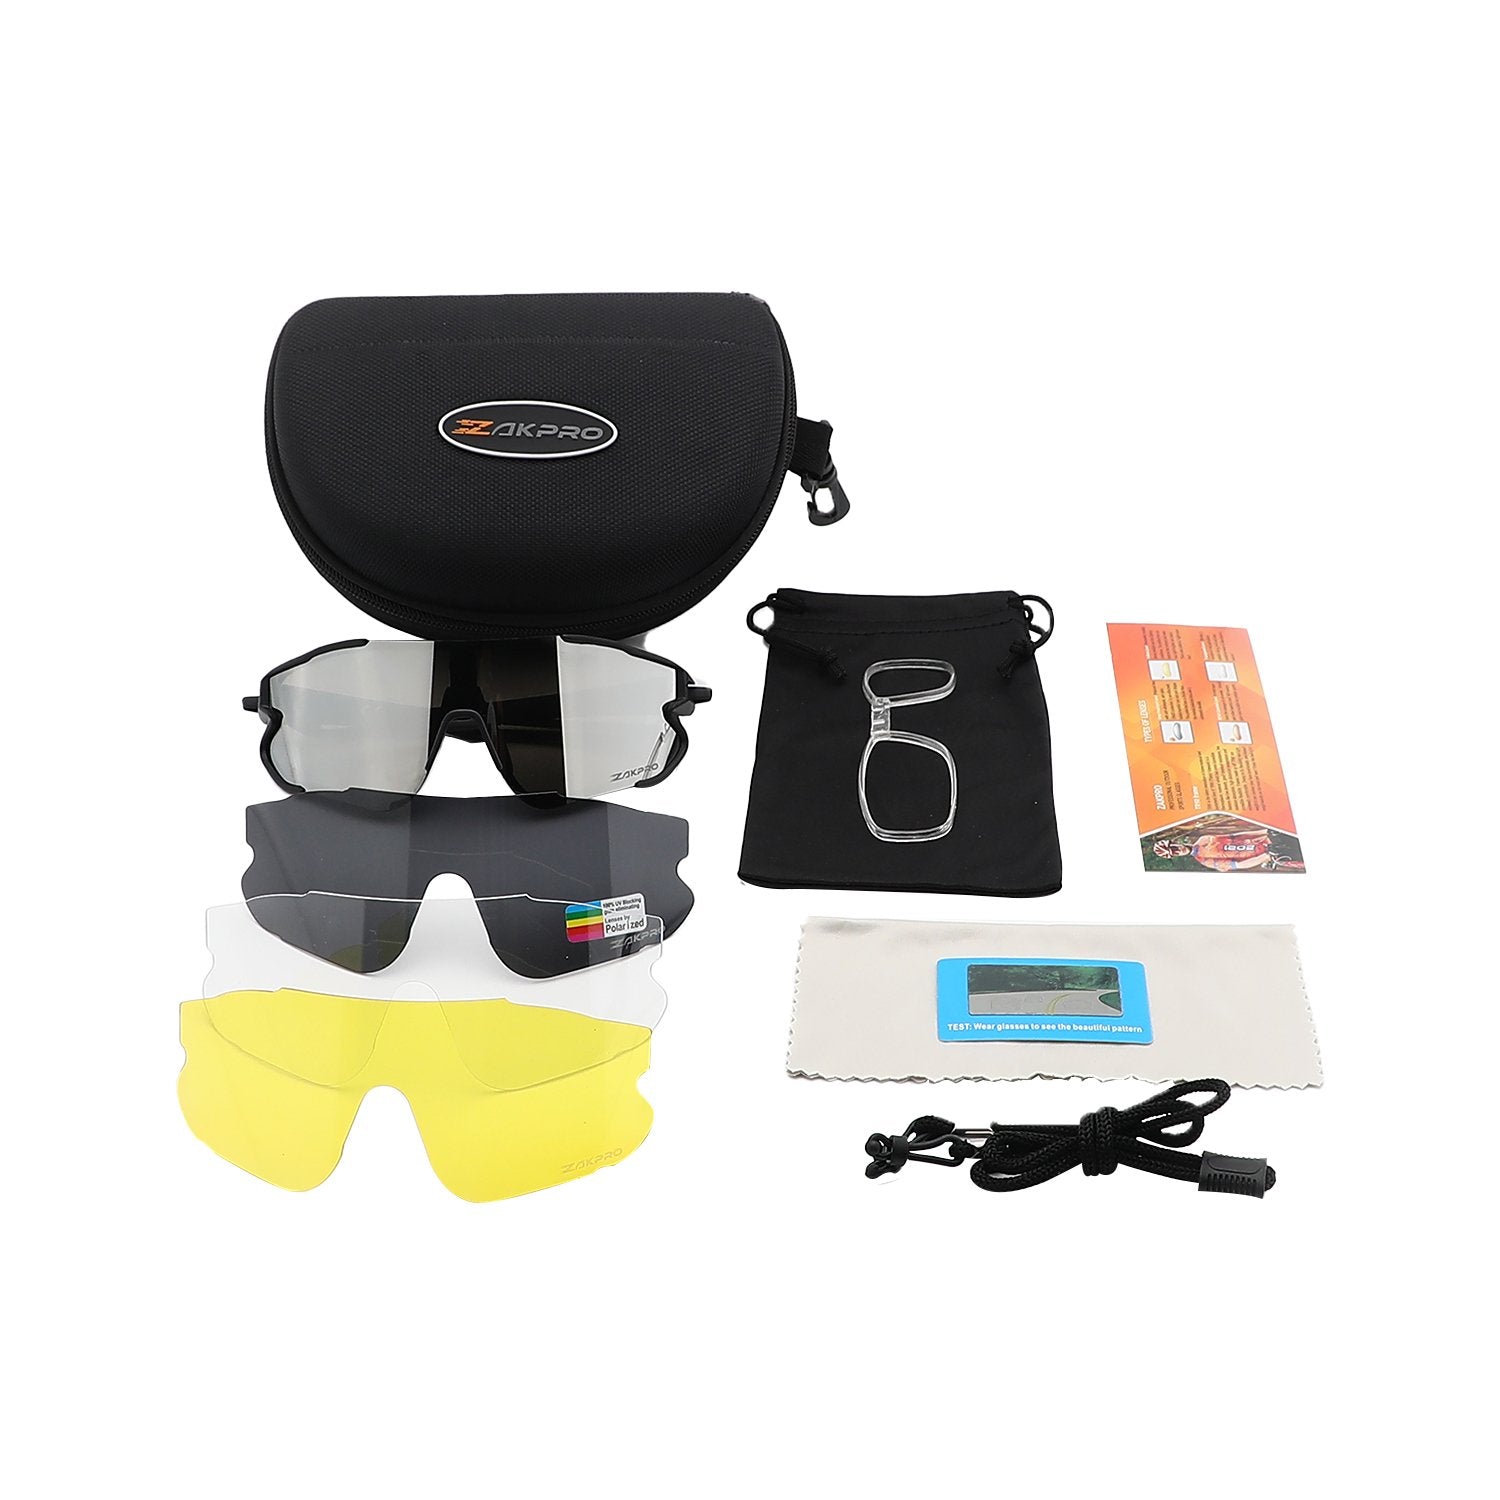 Costa Corbina Pro Sunglasses Review - Wired2Fish